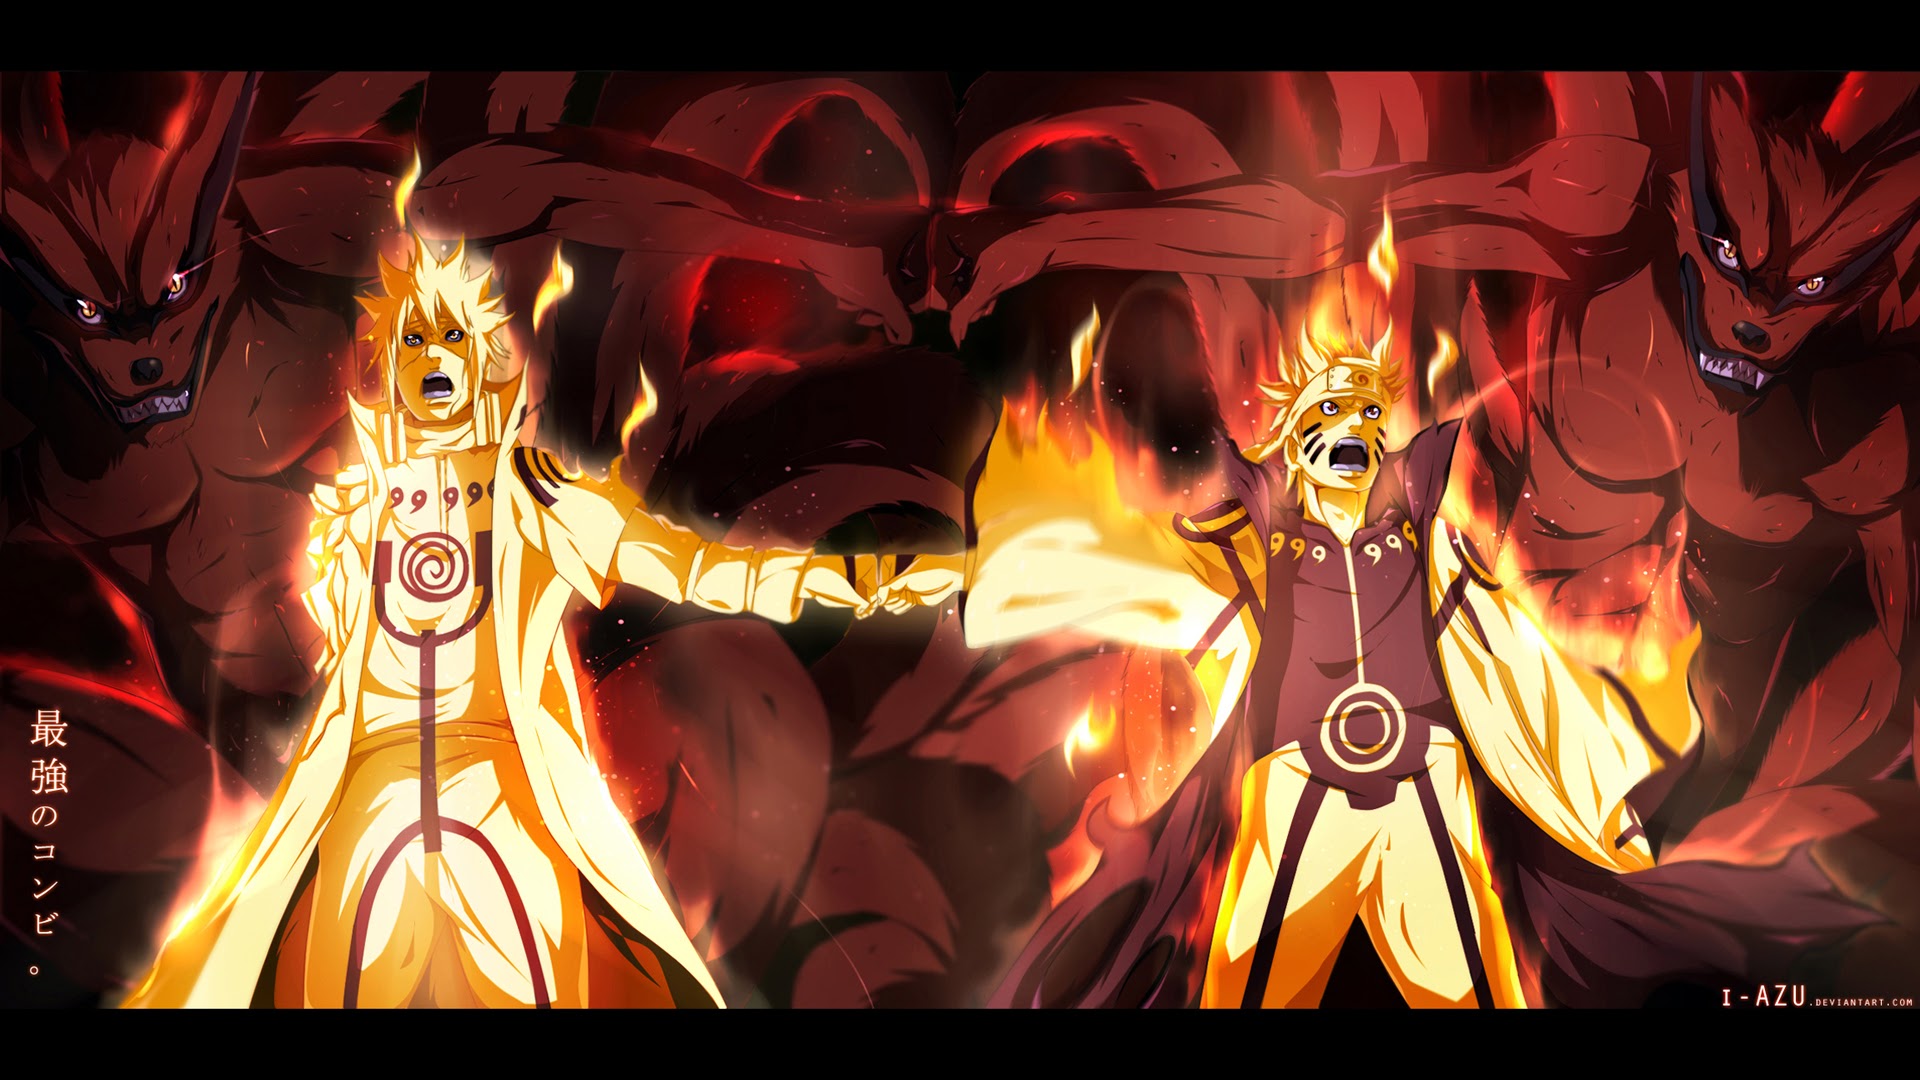 Minatao and Naruto Kyuubi 02 Wallpaper HD